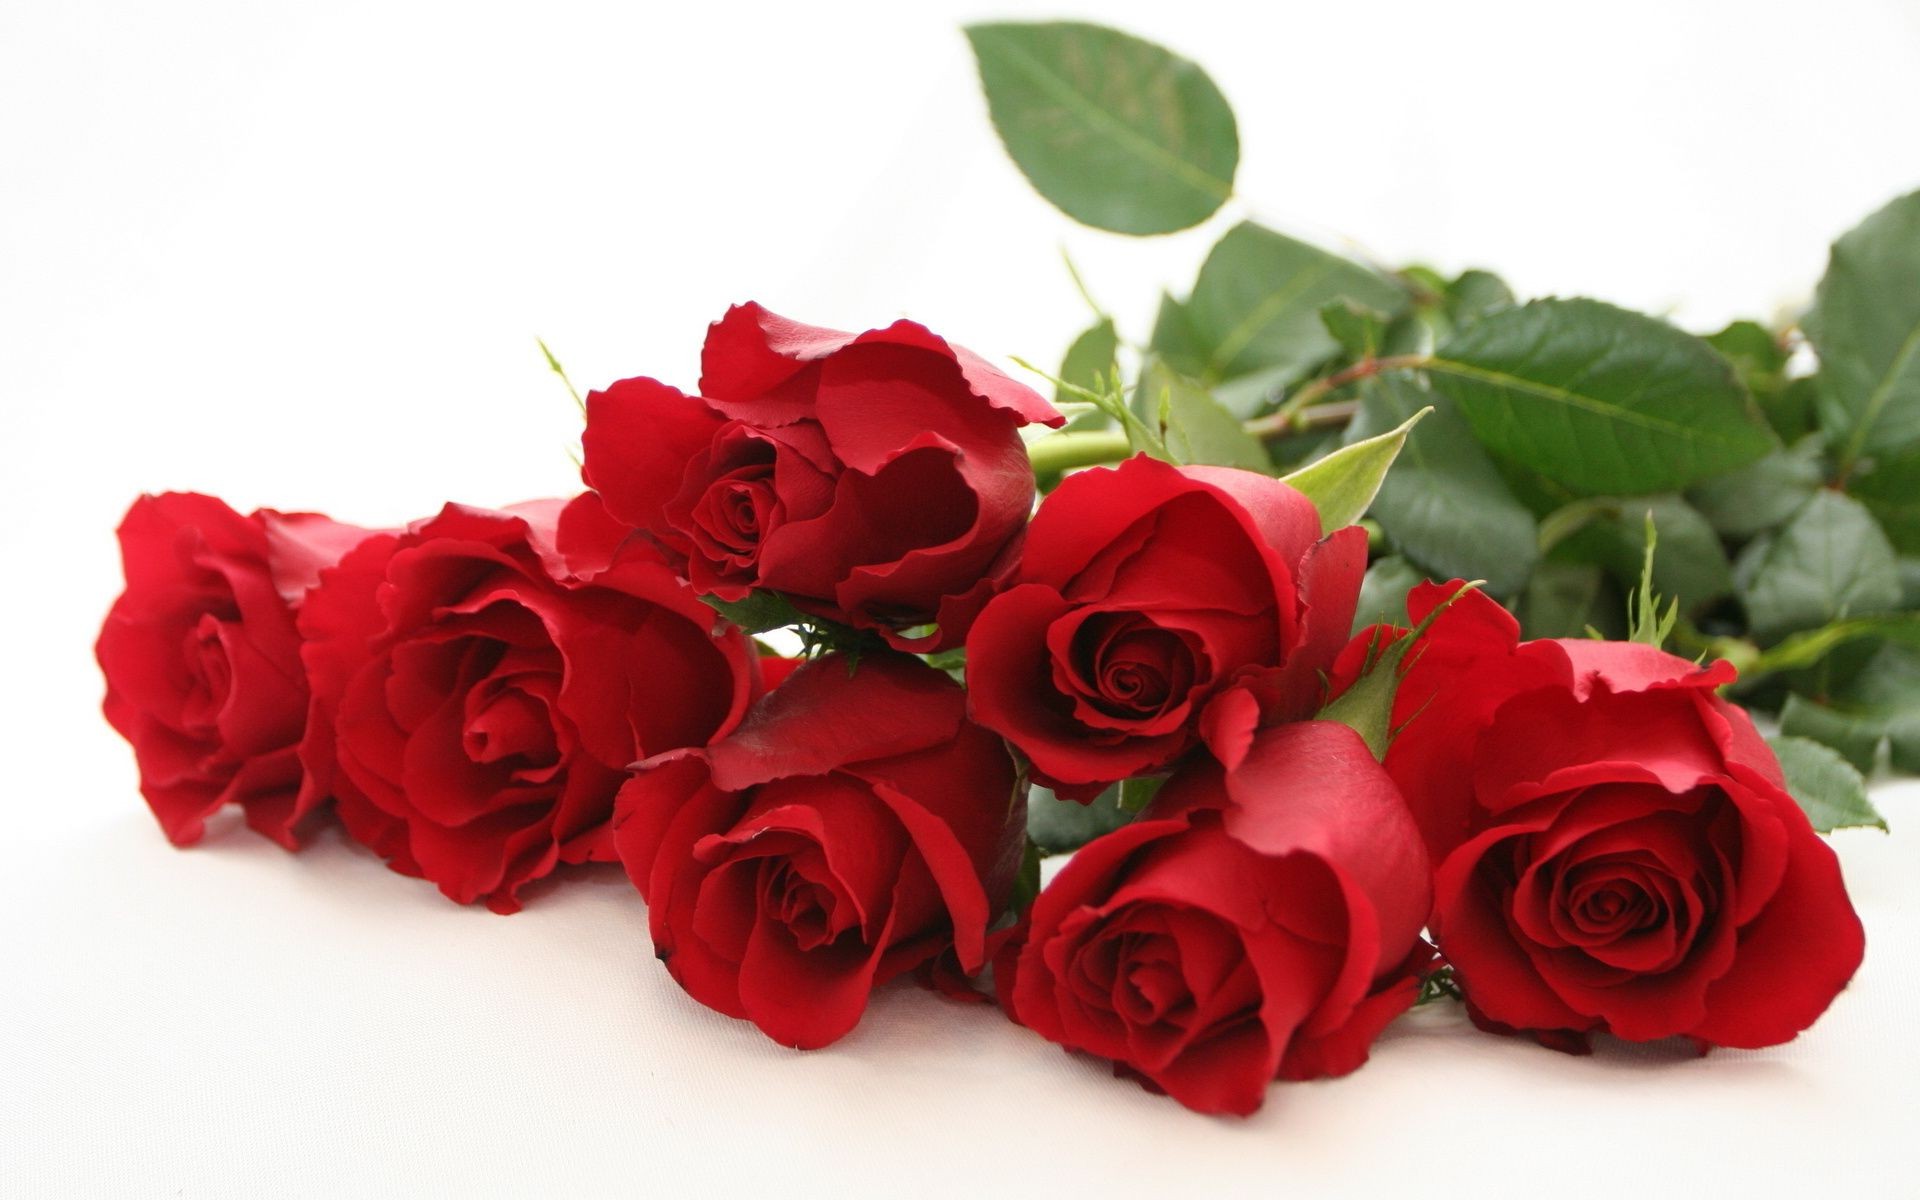 розы романтика любовь лепесток цветок букет подарок романтический цветочные свадьба юбилей блюминг дружище брак духи день рождения любовь день святого валентина кластер флора